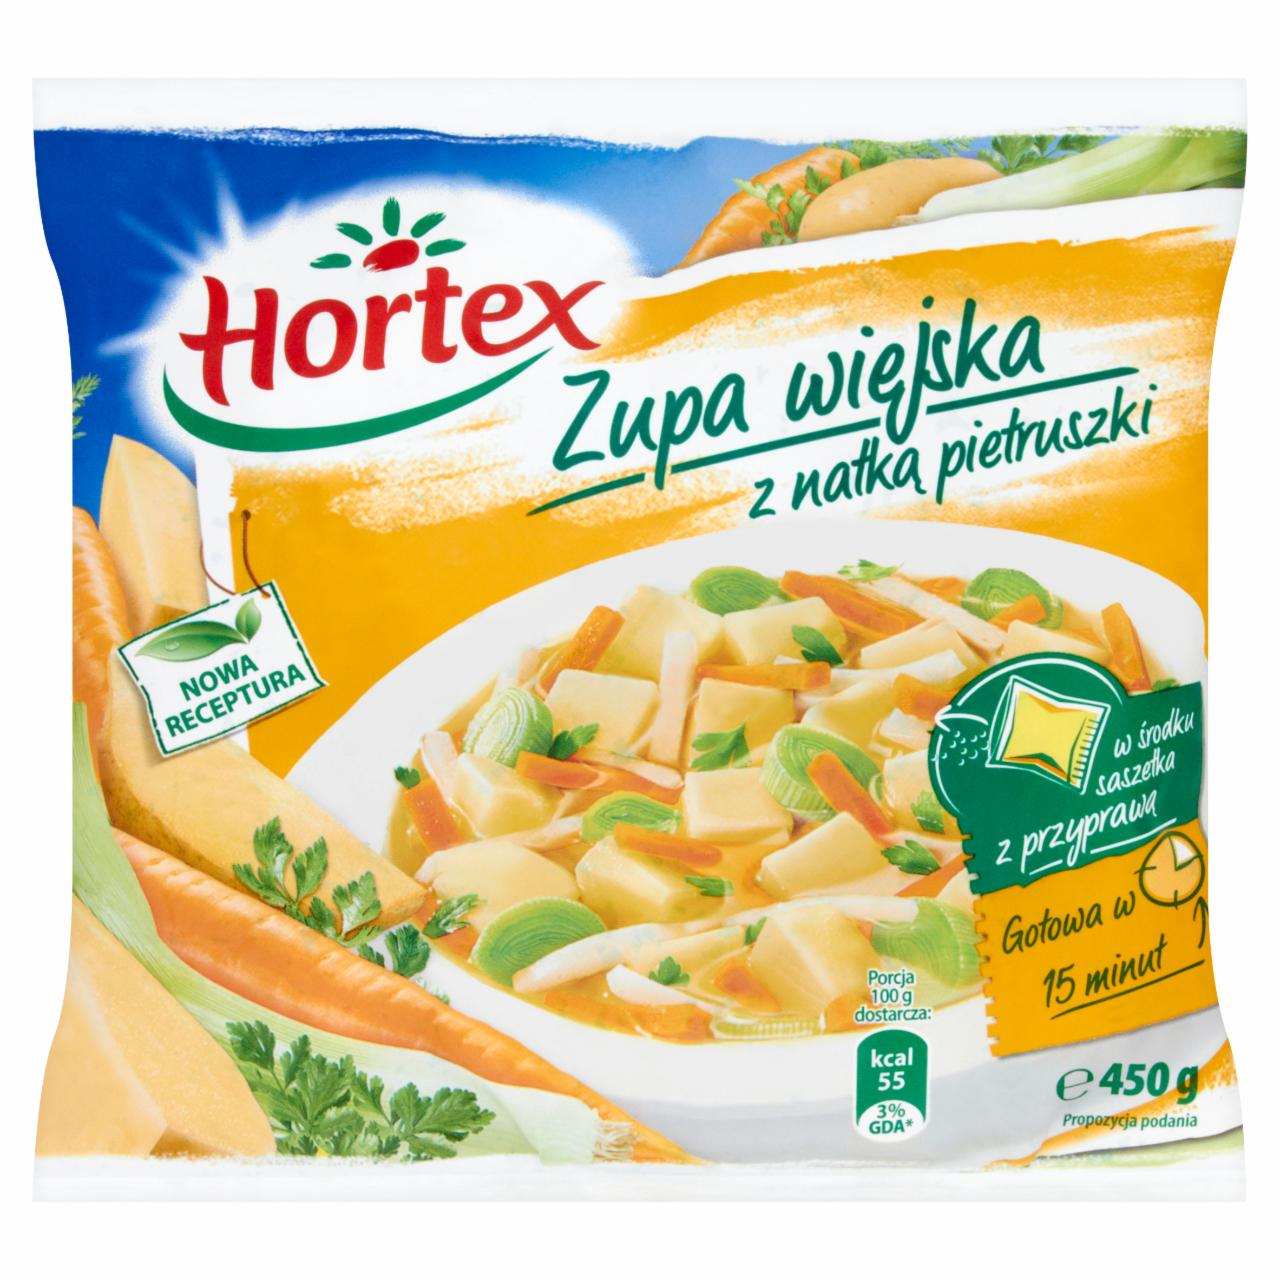 Zdjęcia - Hortex Zupa wiejska z natką pietruszki 450 g